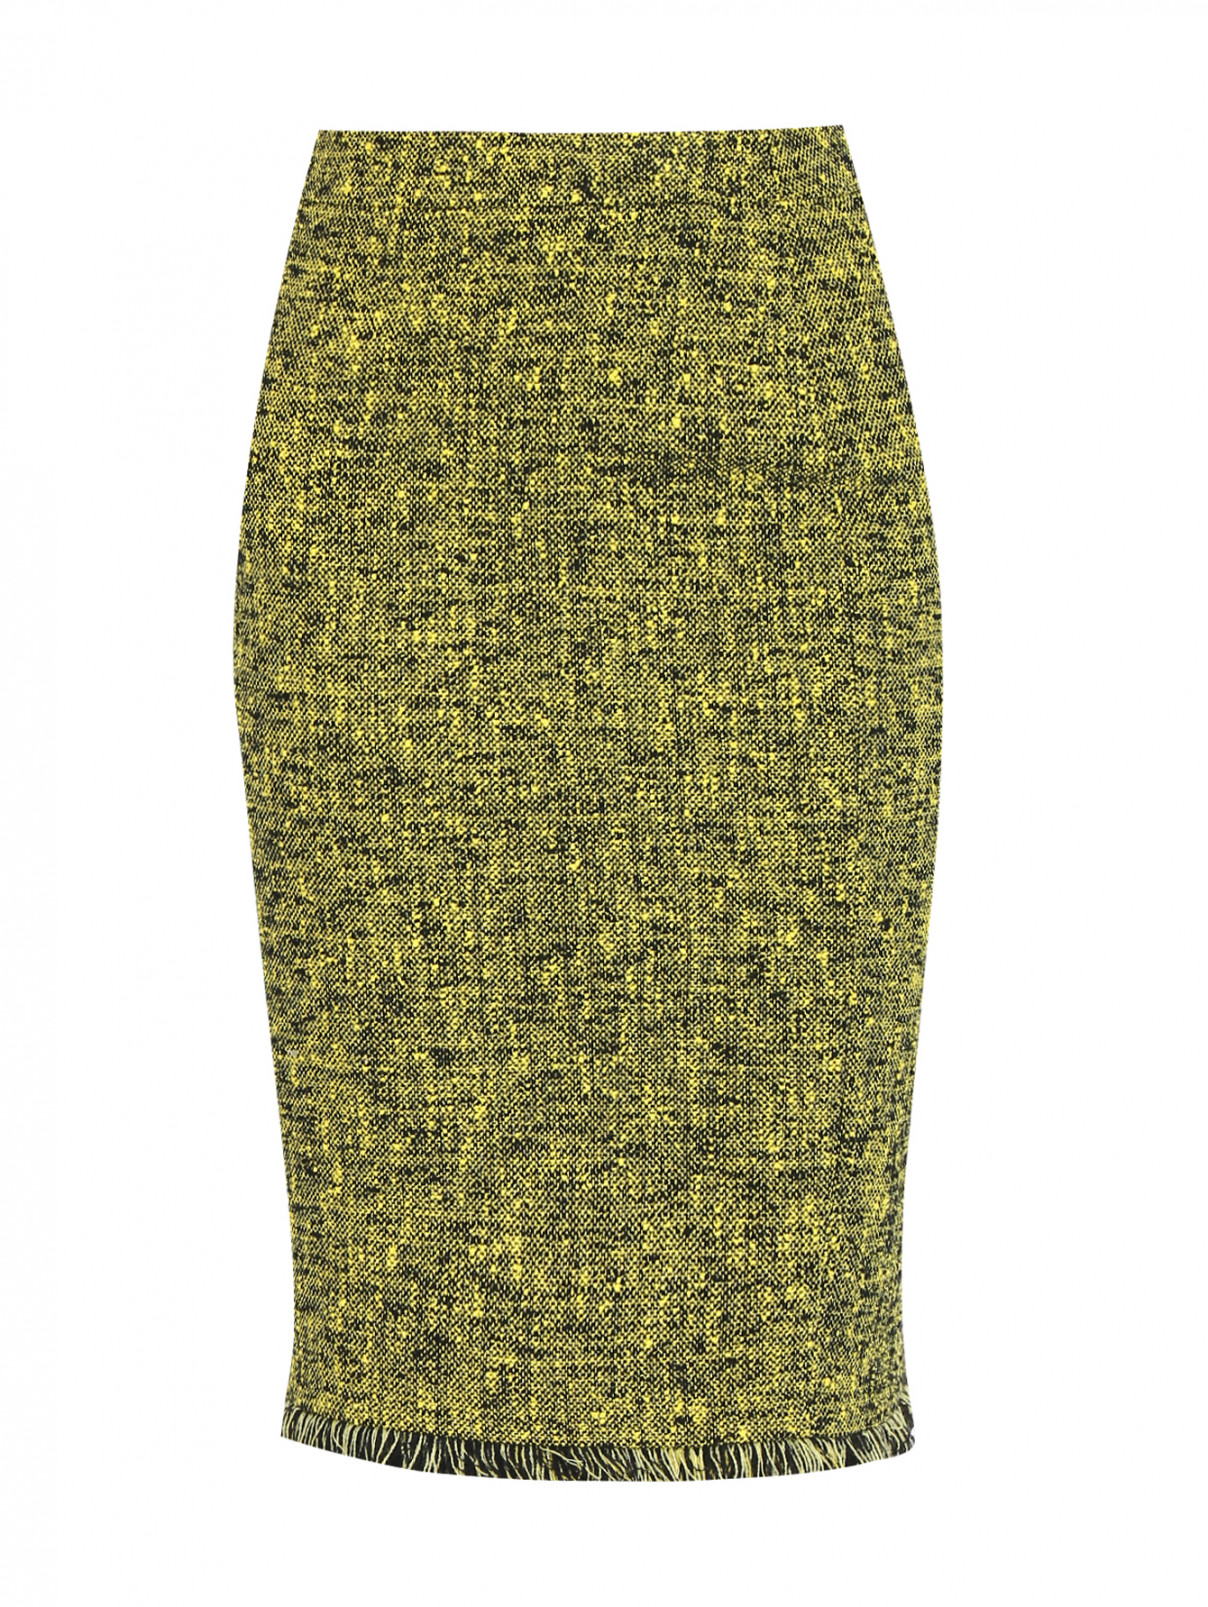 Юбка-карандаш из хлопка с бахромой Moschino Boutique  –  Общий вид  – Цвет:  Желтый